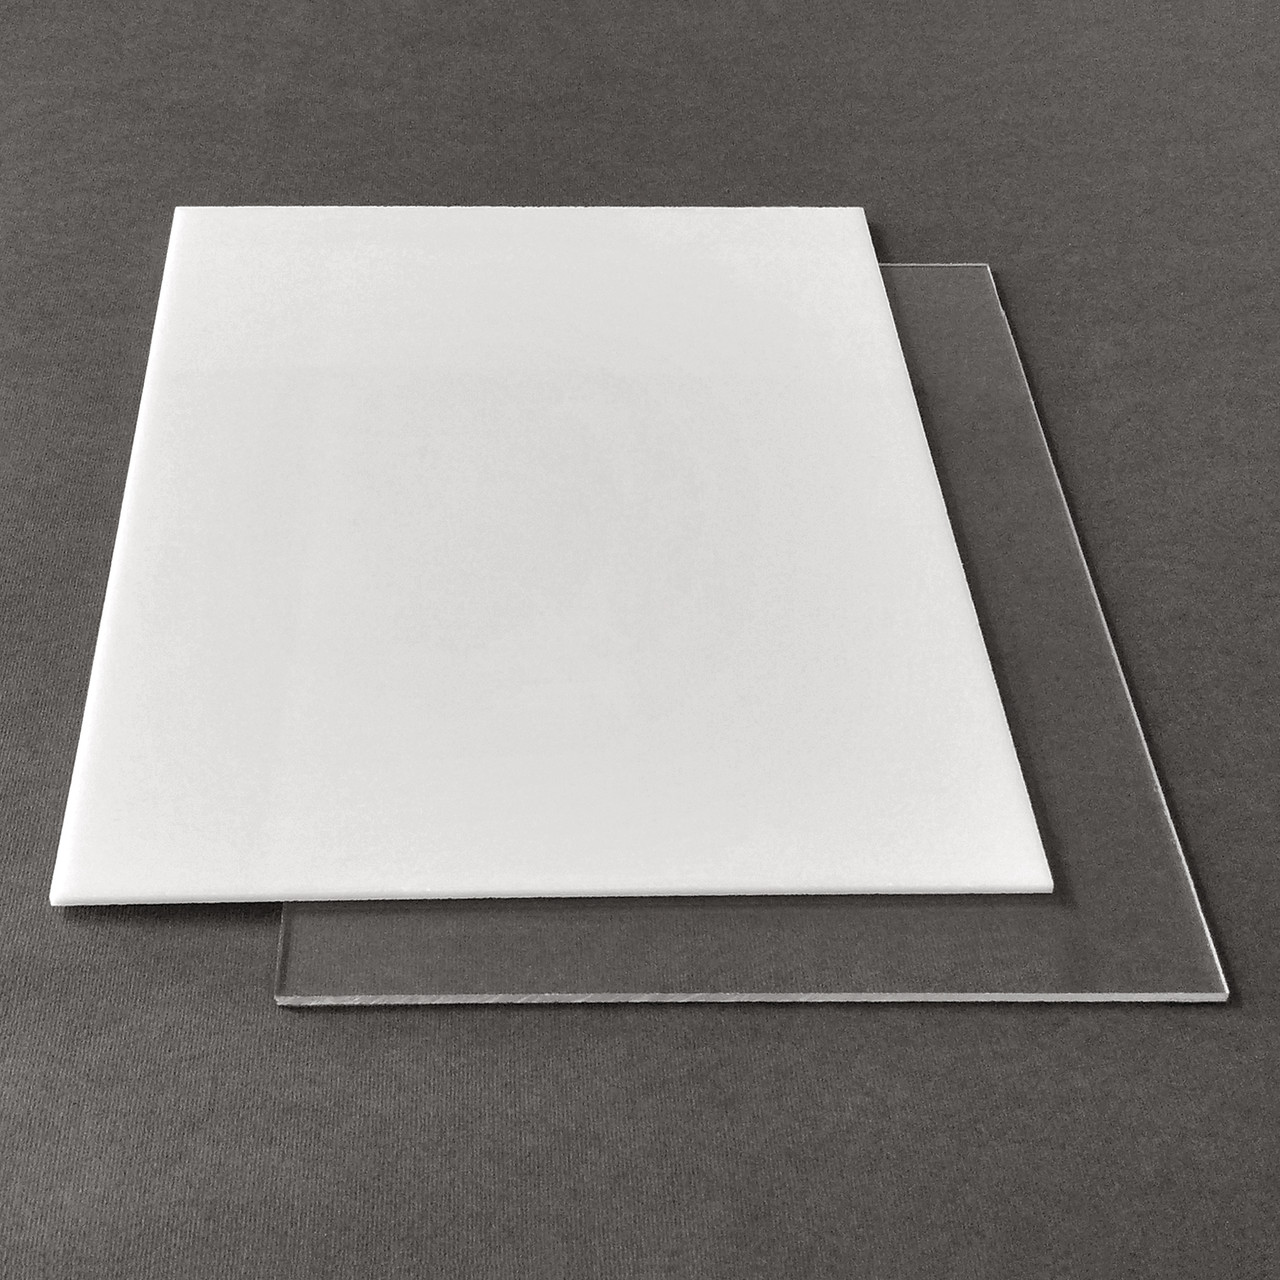 Рекламний пластик САН Plexan, прозорий, лист 2.05 х 3.05 м, 1.5 мм